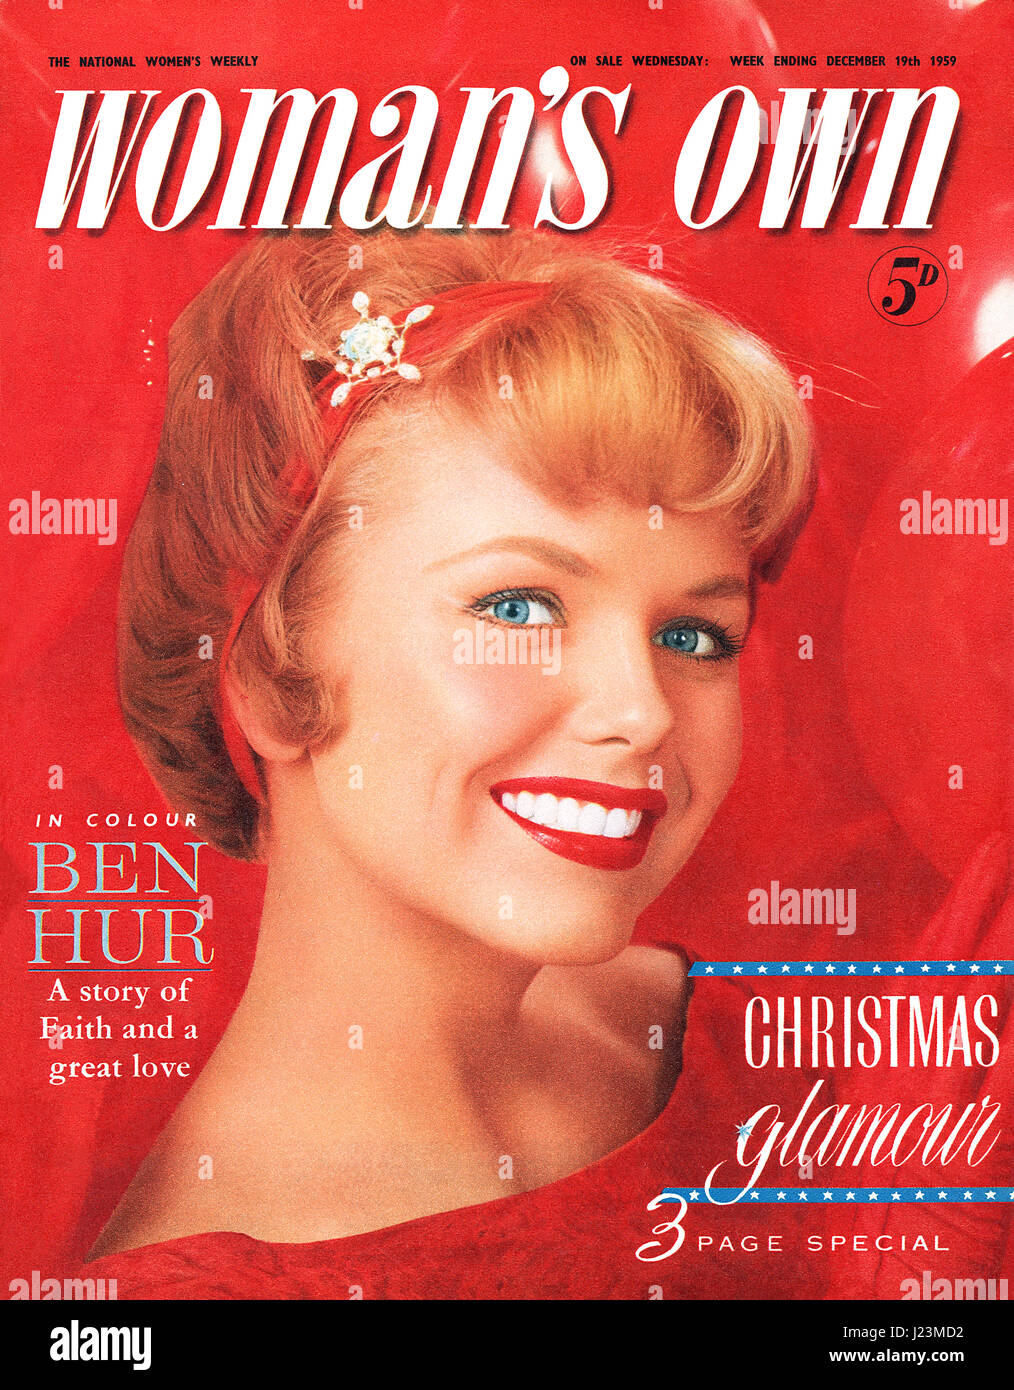 Couverture du magazine de la femme pour la semaine se terminant le 19 décembre 1959. Une question de Noël avec photographie par Mead Maddick. Banque D'Images